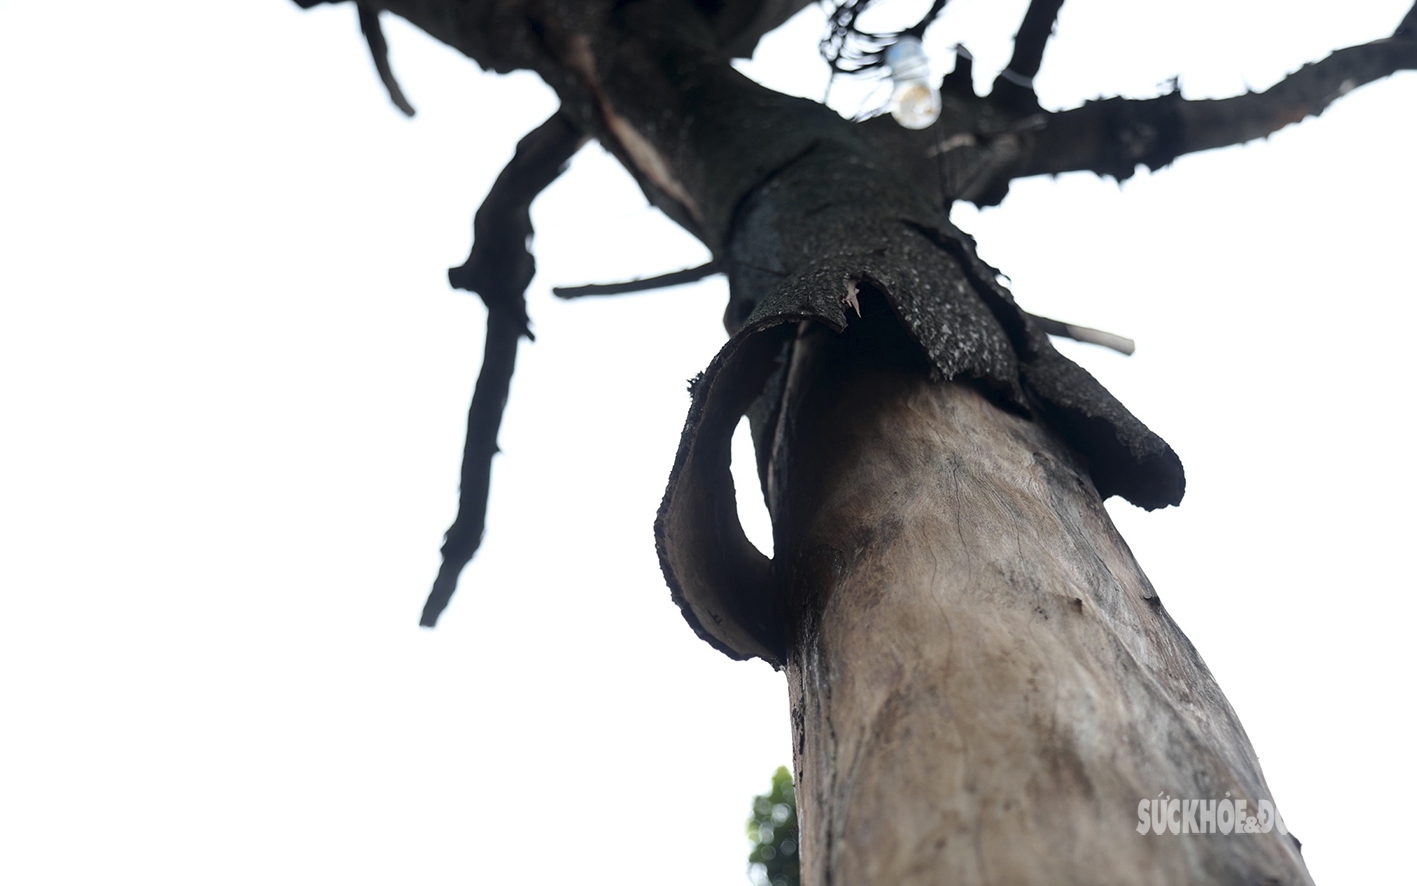 Nhiều cây cổ thụ ở Hà Nội chết khô, nguy cơ đổ gãy trong mùa mưa bão